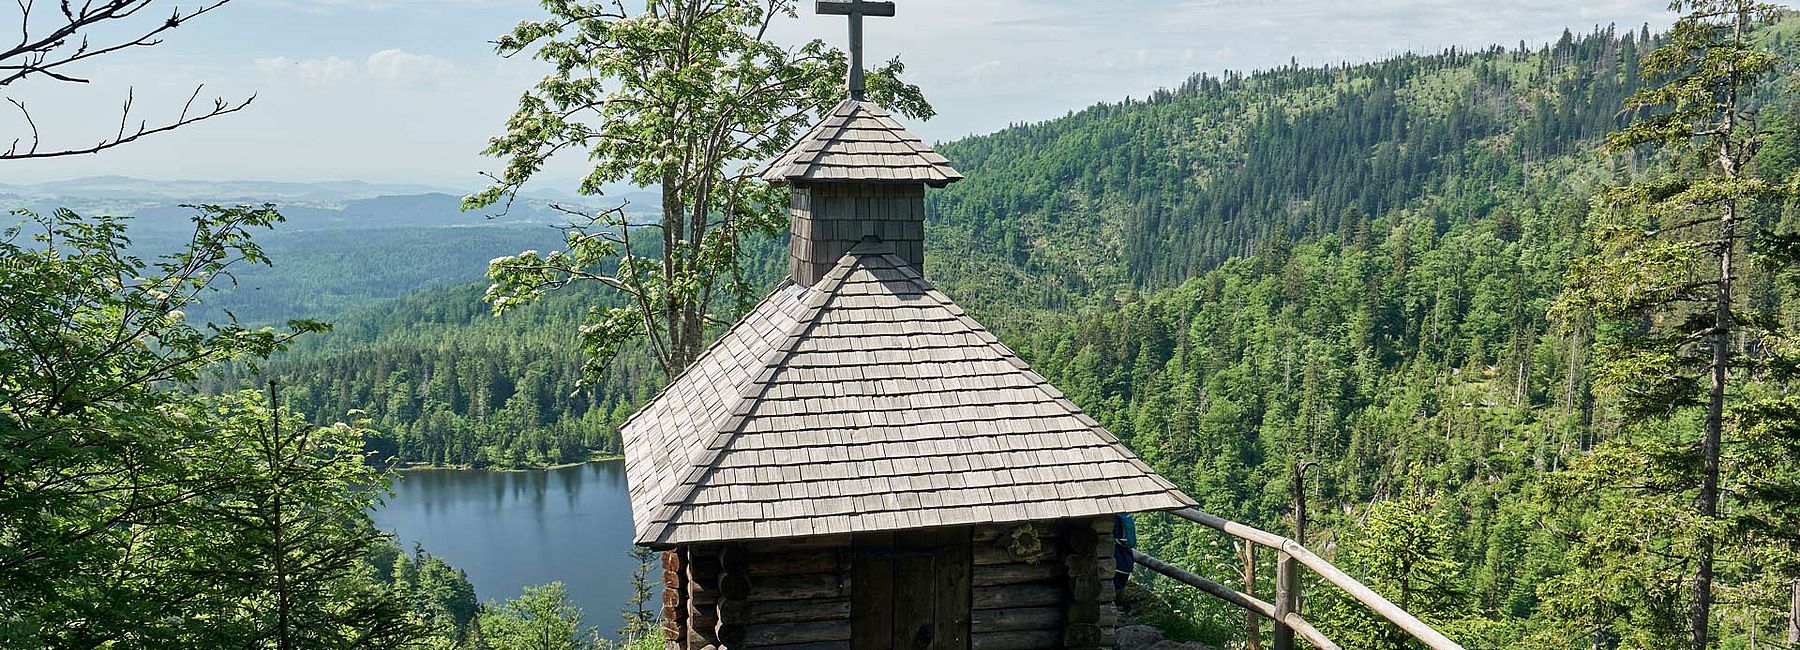 Rachelkapelle am Rachelsee im Bayerischen Wald im Sommer bei Sonnenschein